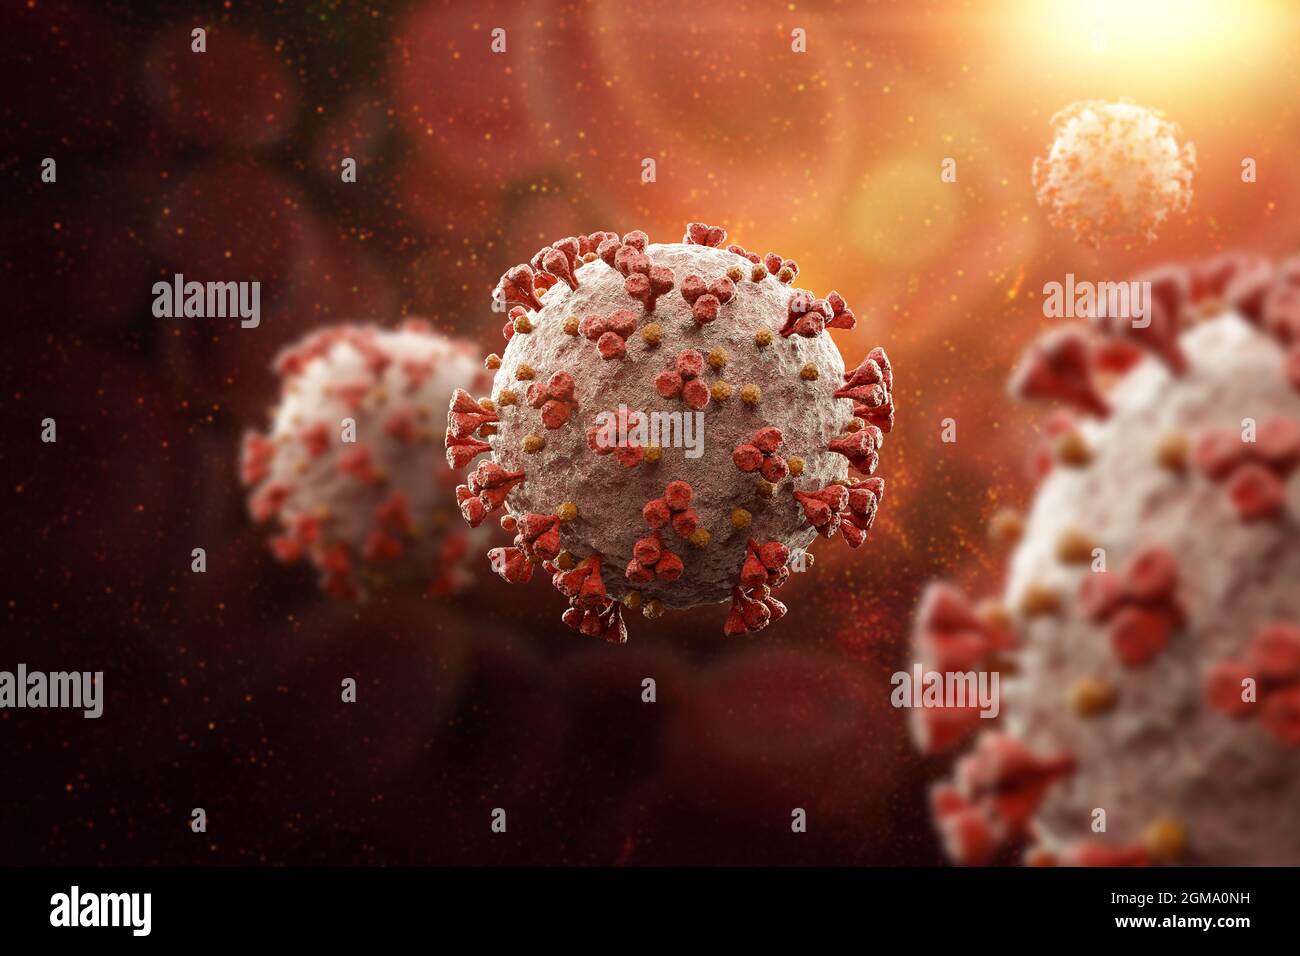 Coronavirus outbreak dangerous cases of flu strain, pandemic Stock Photo